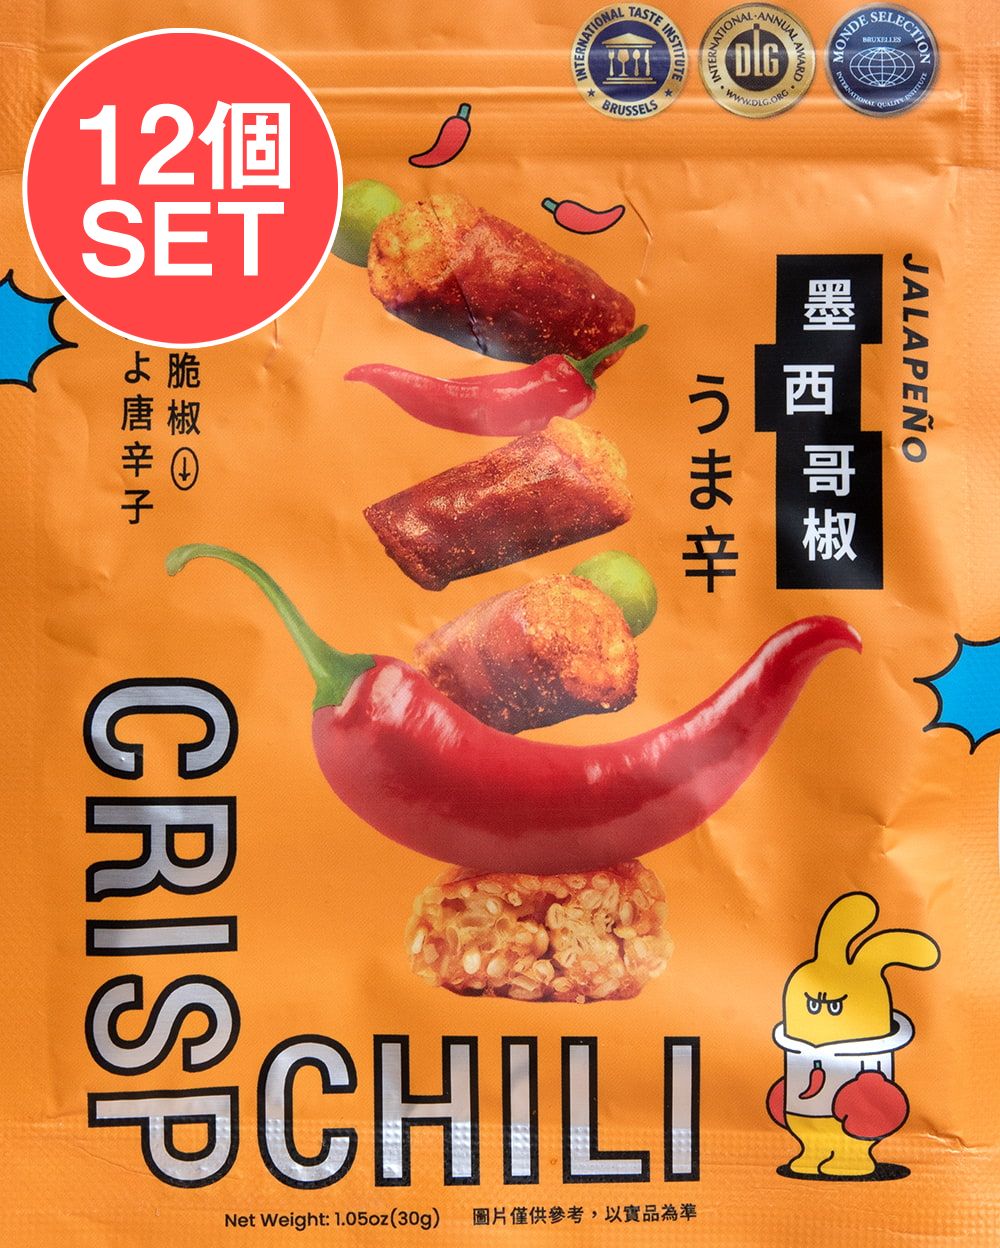 【送料無料】 12個セット】台湾スナック クリスプチリ ハラペーニョ風味 30g CRISP CHILLI うま辛【台湾DOGA】 / 中国 食品 食材 アジア